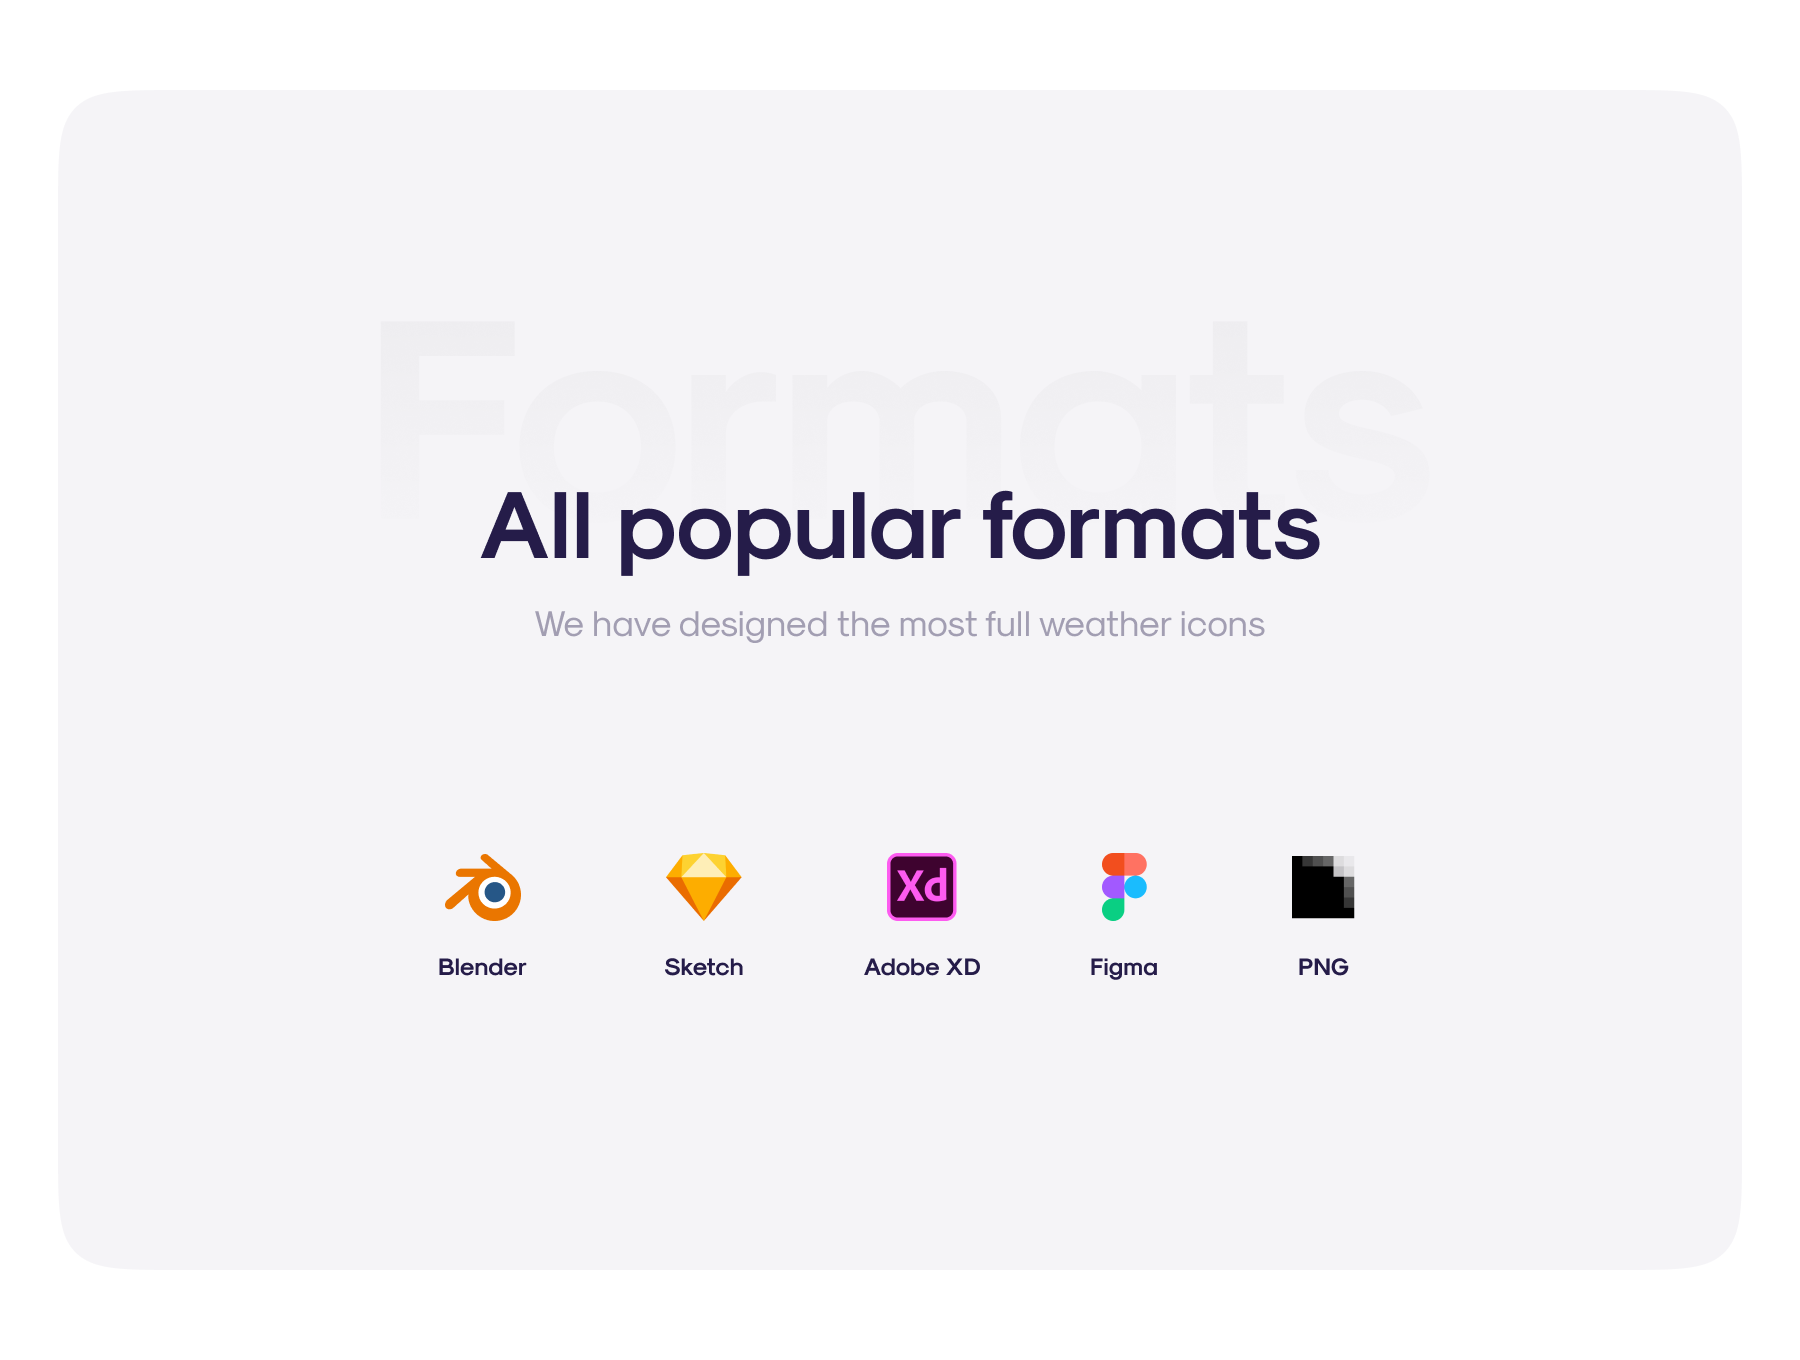 50多个3D高分辨率原始风格和粘土风格完美天气图标包 Weatherly 3D icons – 50+ Weather icons 图标素材 第10张